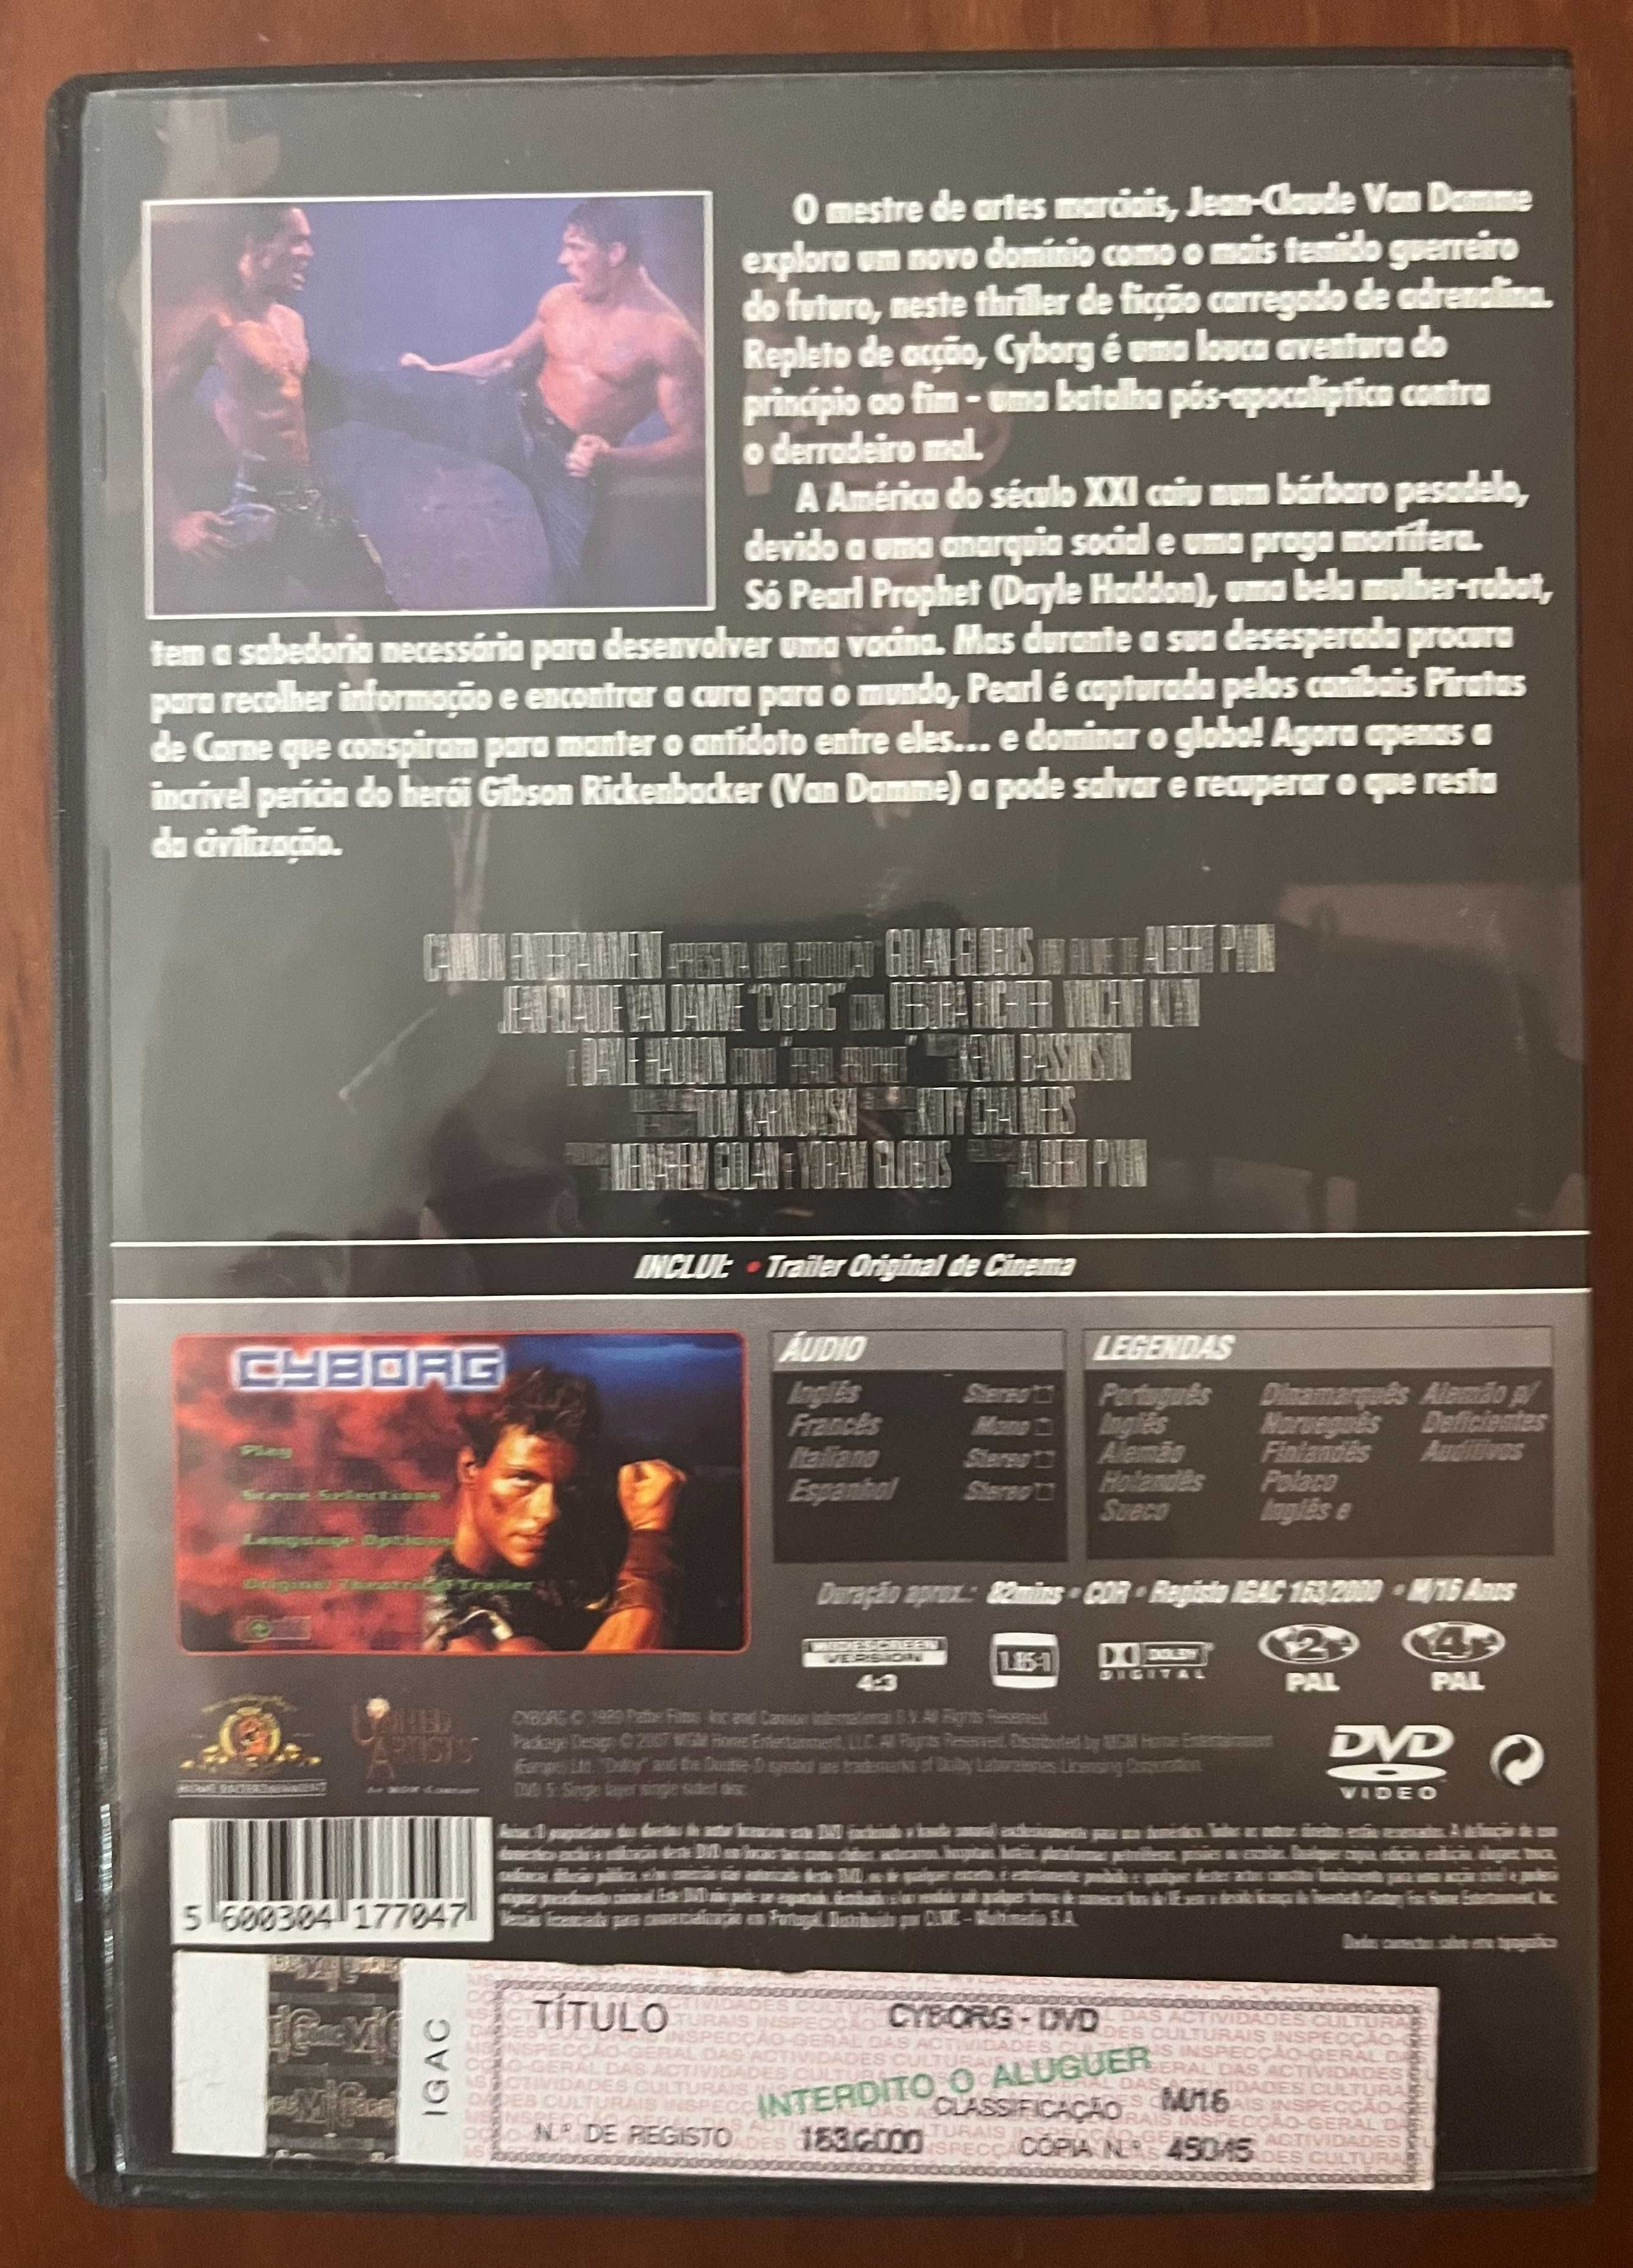 DVD "Cyborg" Van Damme